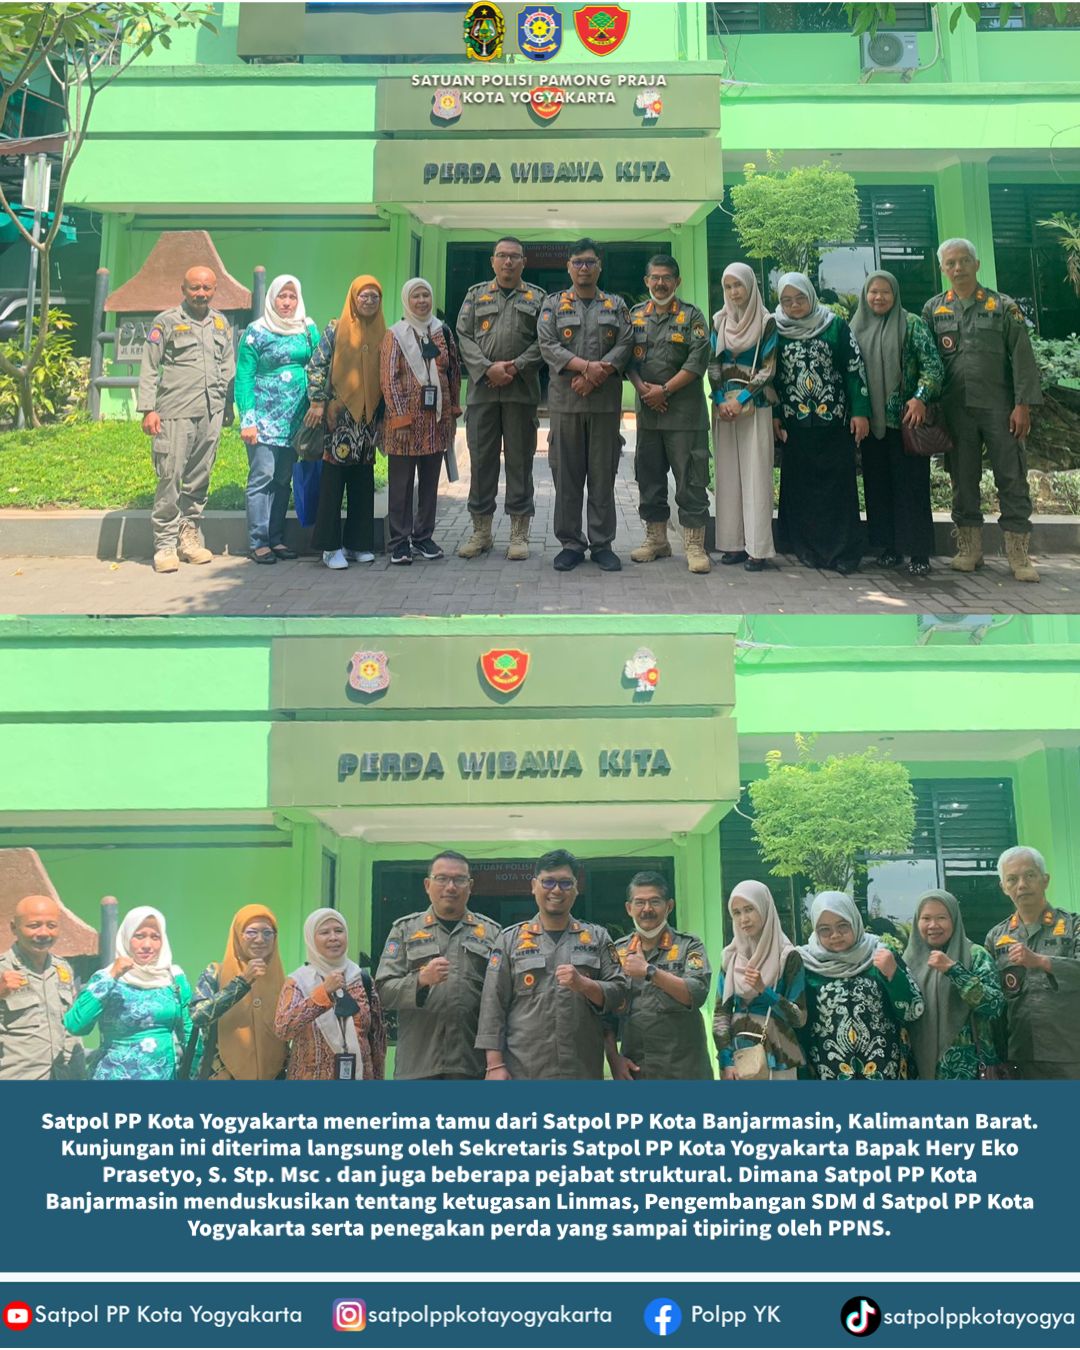 Satpol PP Kota Yogyakarta menerima tamu dari Satpol PP Kota Banjarmasin, Kalimantan Barat